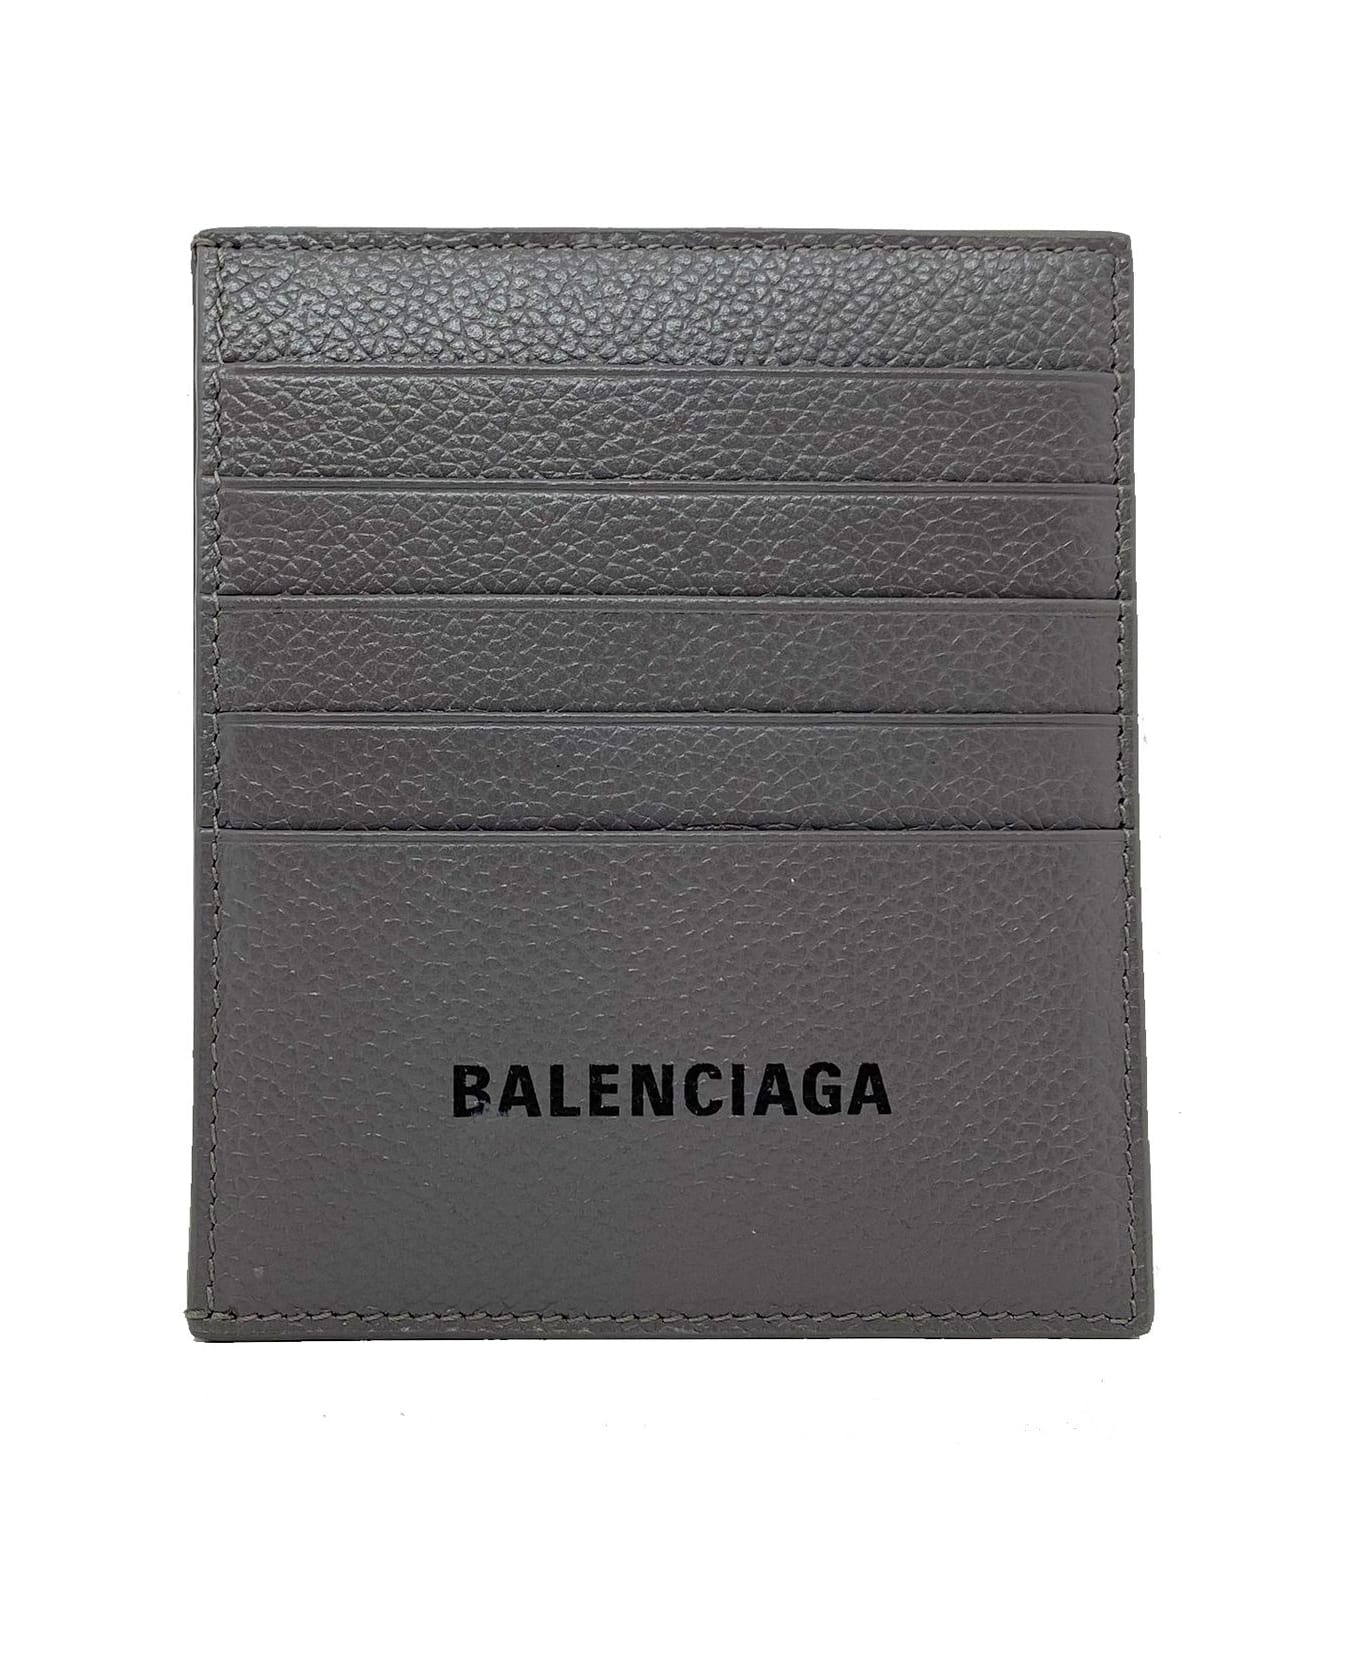 Balenciaga Logo Card Holder - Gray 財布